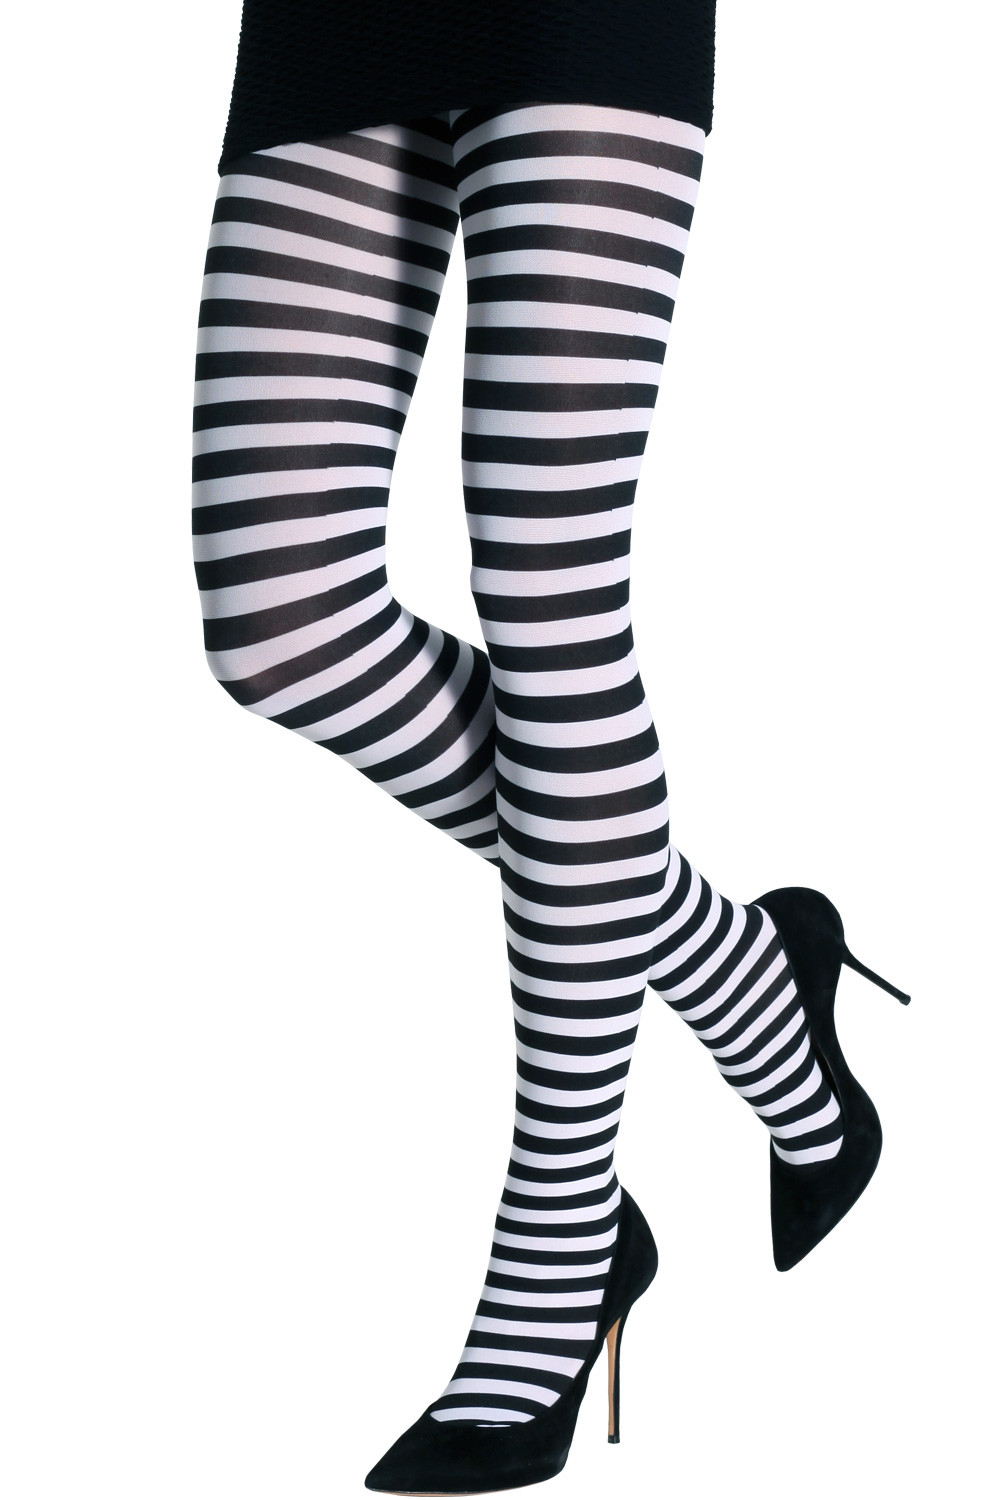 Jailbird Black and White striped Leggings – Wonderland Awaits